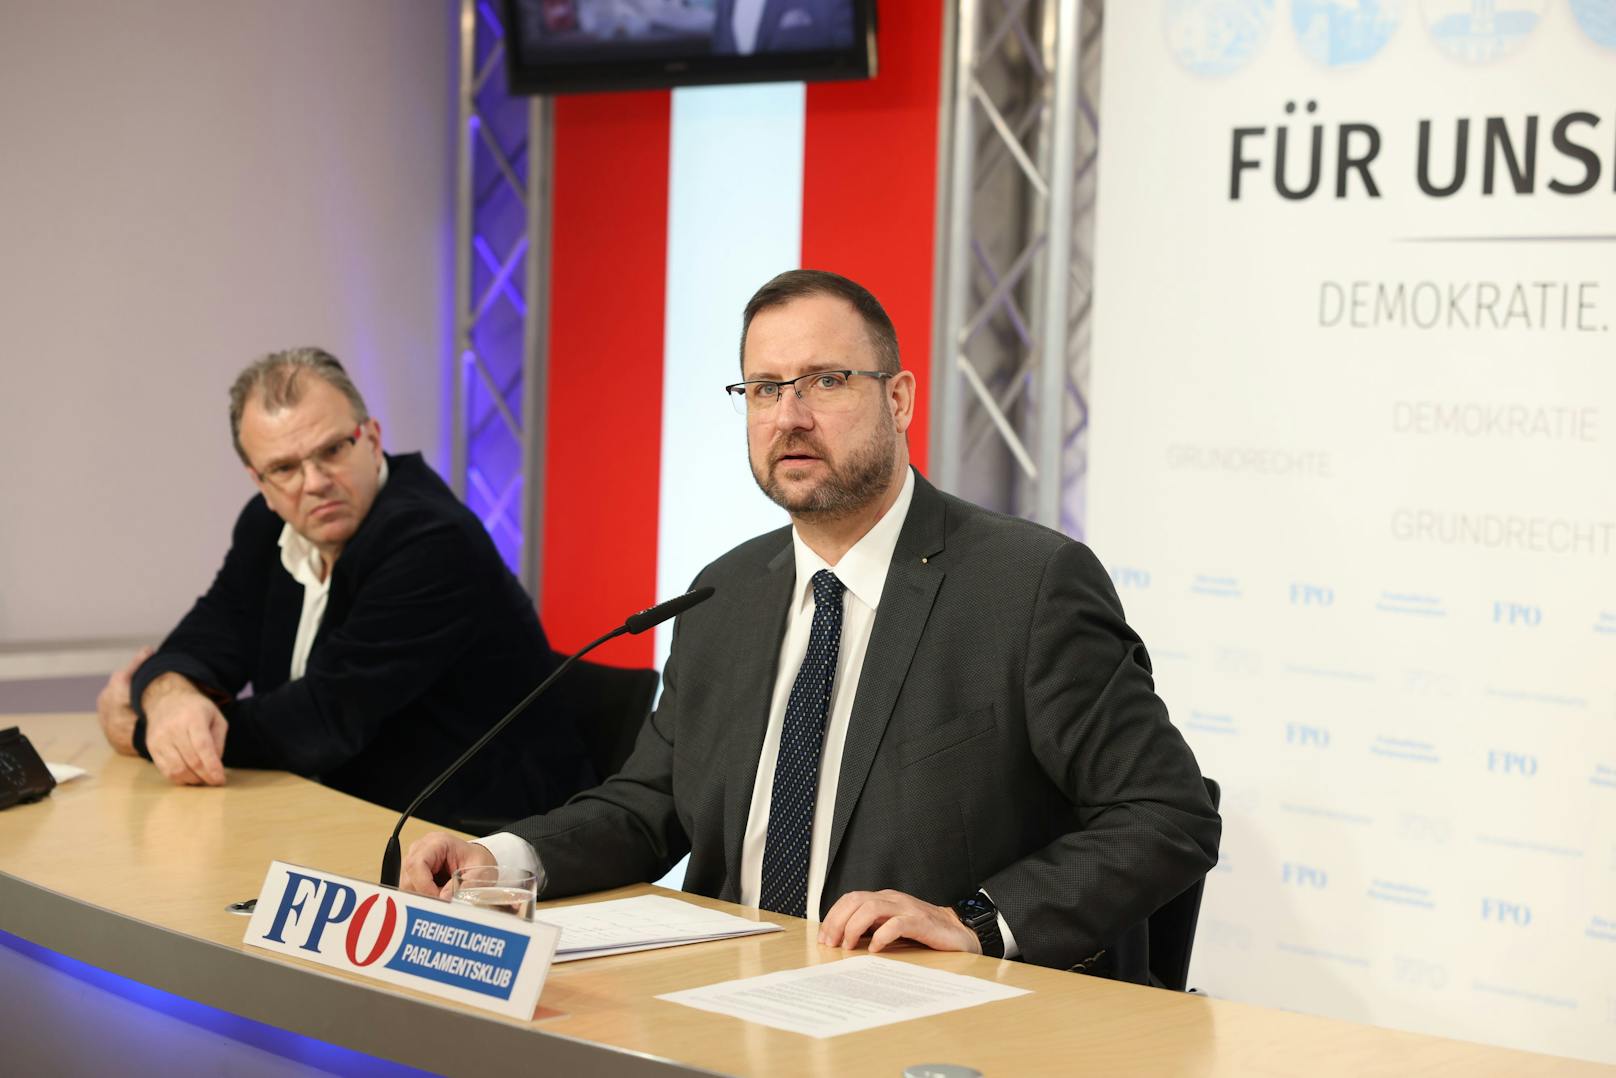 FPÖ-Mediensprecher Christian Hafenecker ließ am 22. Februar 2021 die "Bombe" platzen